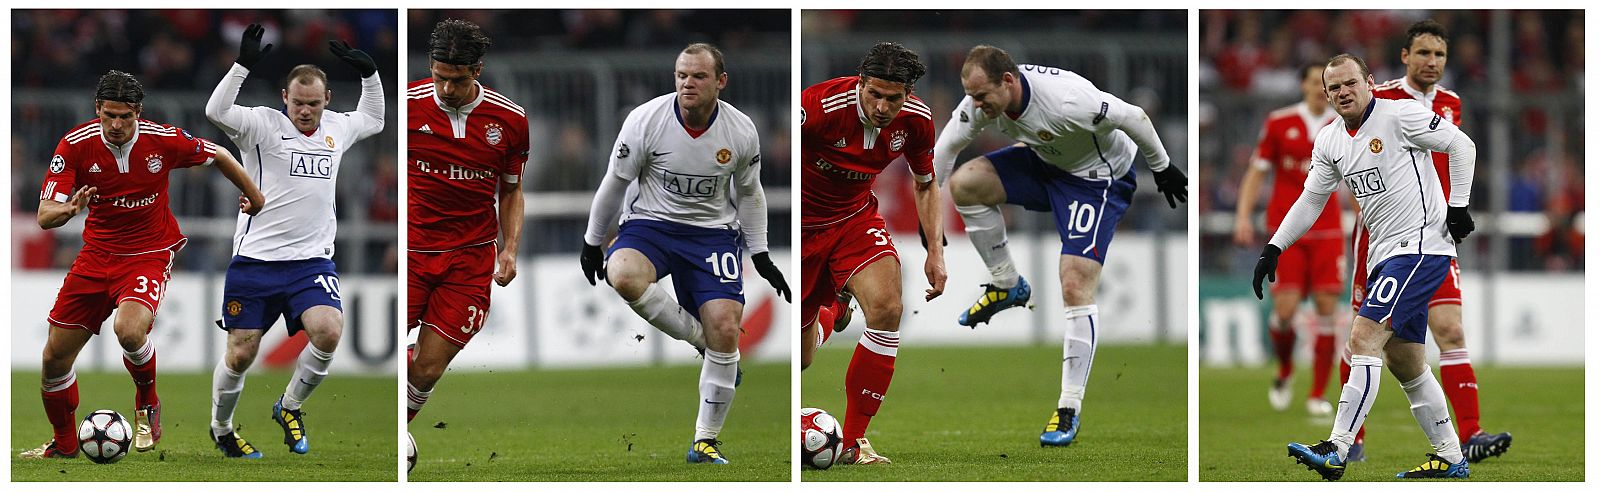 Rooney se ha tenido que retirar lesionado por un golpe en su tobillo en el partido ante el Bayern.